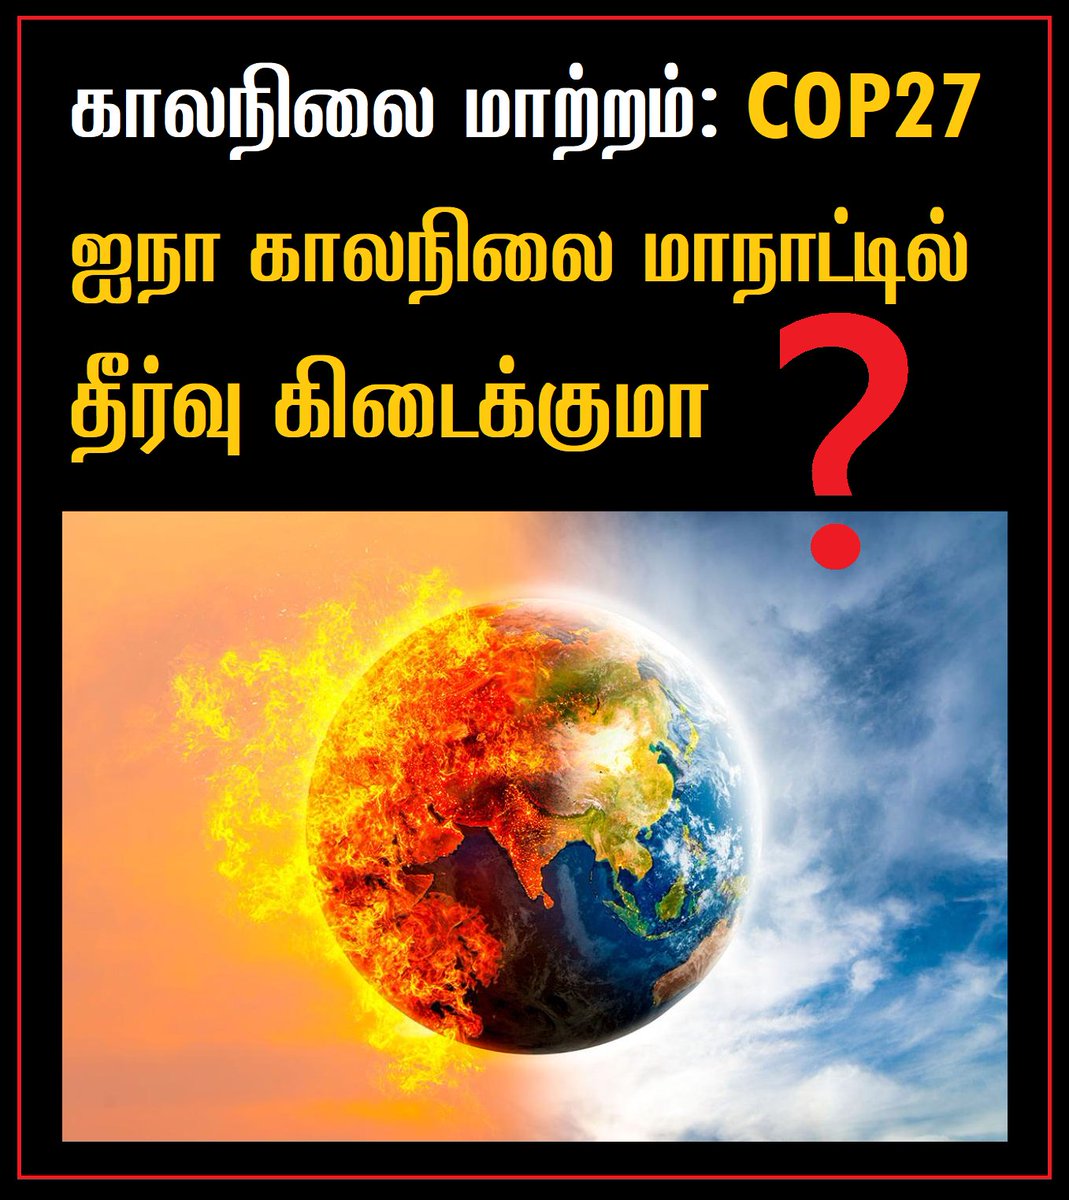 'காலநிலை மாற்றம்: #COP27 ஐநா காலநிலை மாநாட்டில் தீர்வு கிடைக்குமா?' ⬇️⬇️ கட்டாயம் படிக்க வேண்டிய தொடர் - பகுதி 1 👉👇facebook.com/arulgreen/post… #ClimateEmergency #ClimateAction #PasumaiThaayagam